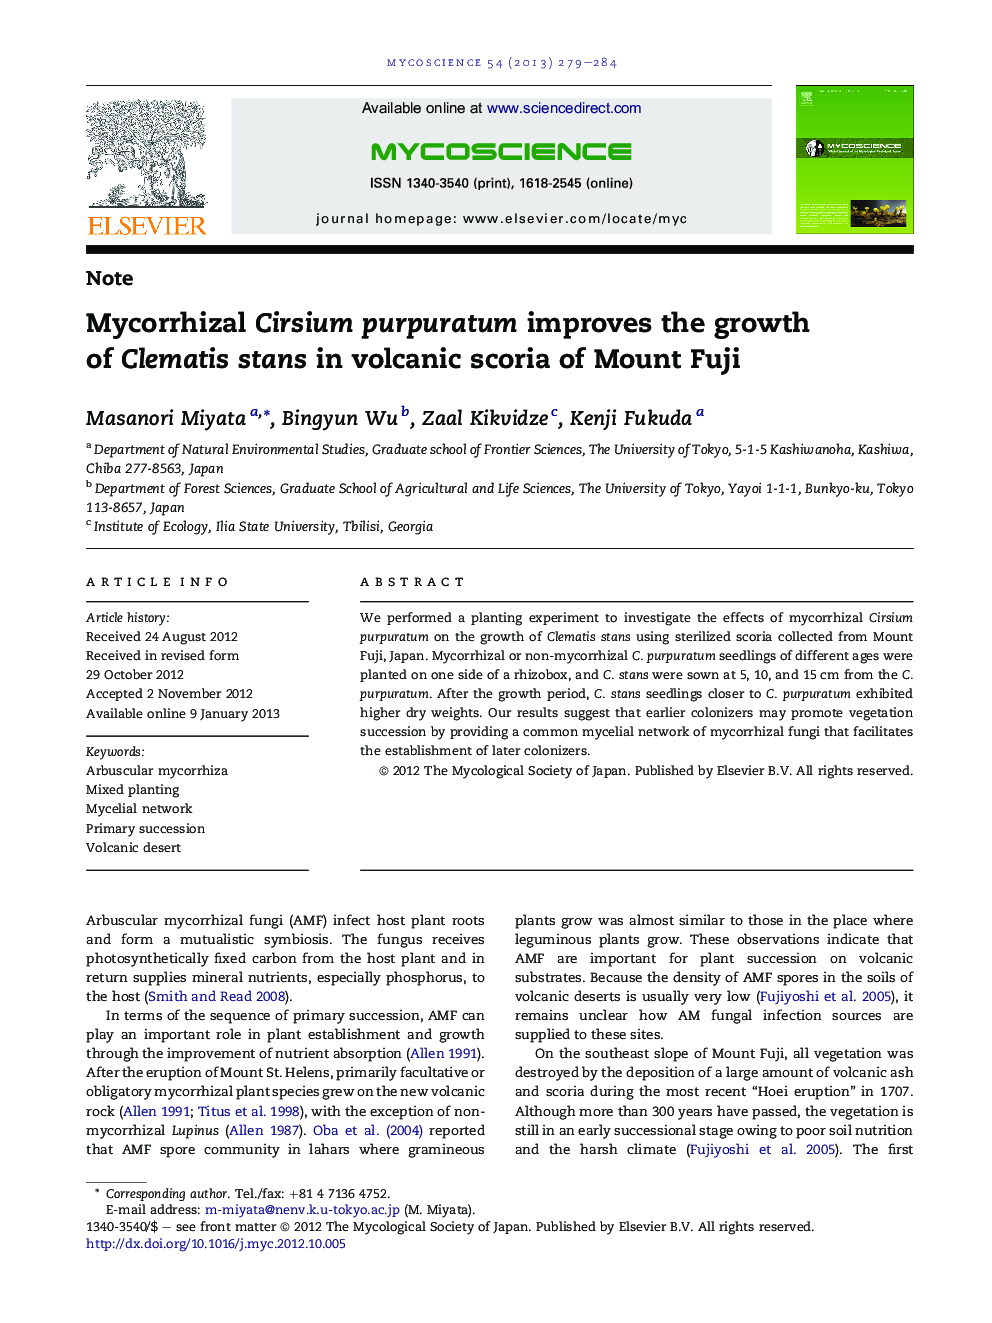 Mycorrhizal Cirsium purpuratum improves the growth of Clematis stans in volcanic scoria of Mount Fuji